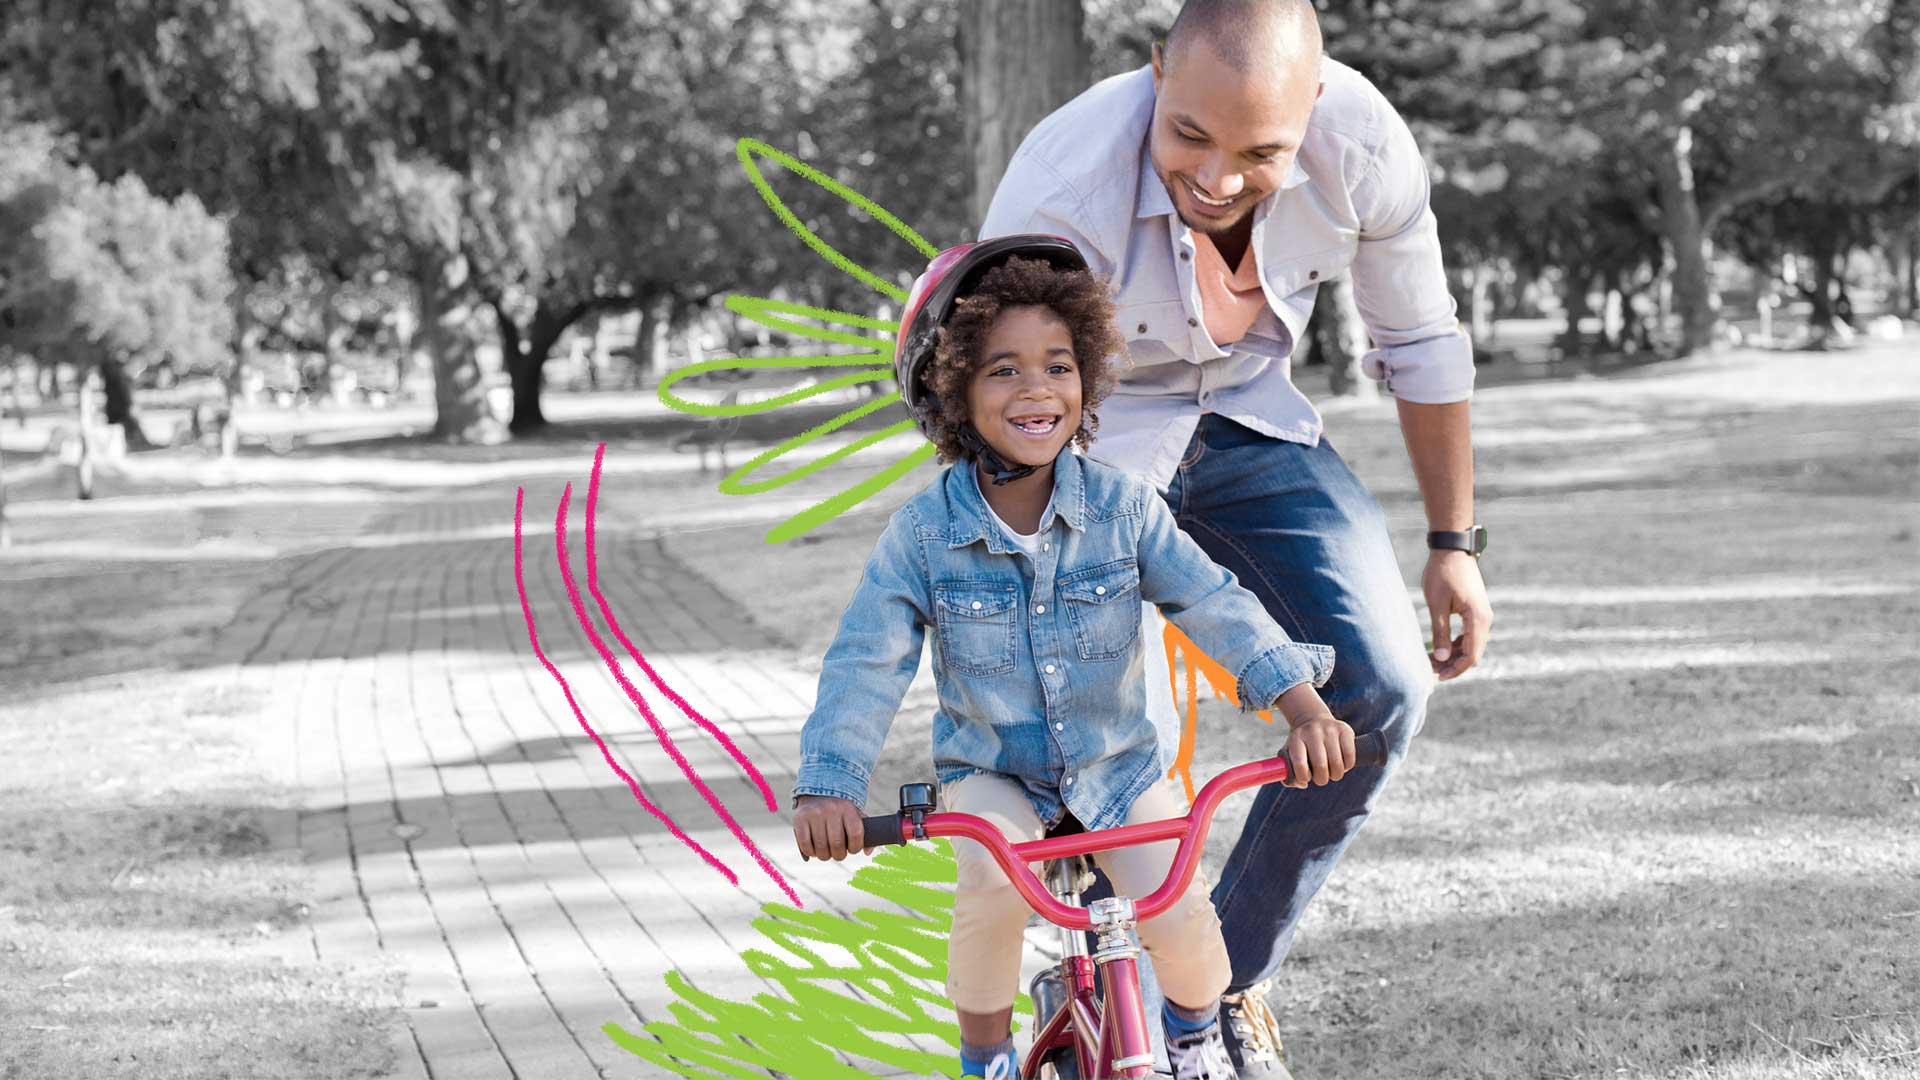 Frases positivas para crianças: foto de um garoto que sorri andando de bicicleta enquanto seu pai o incentiva logo atrás.